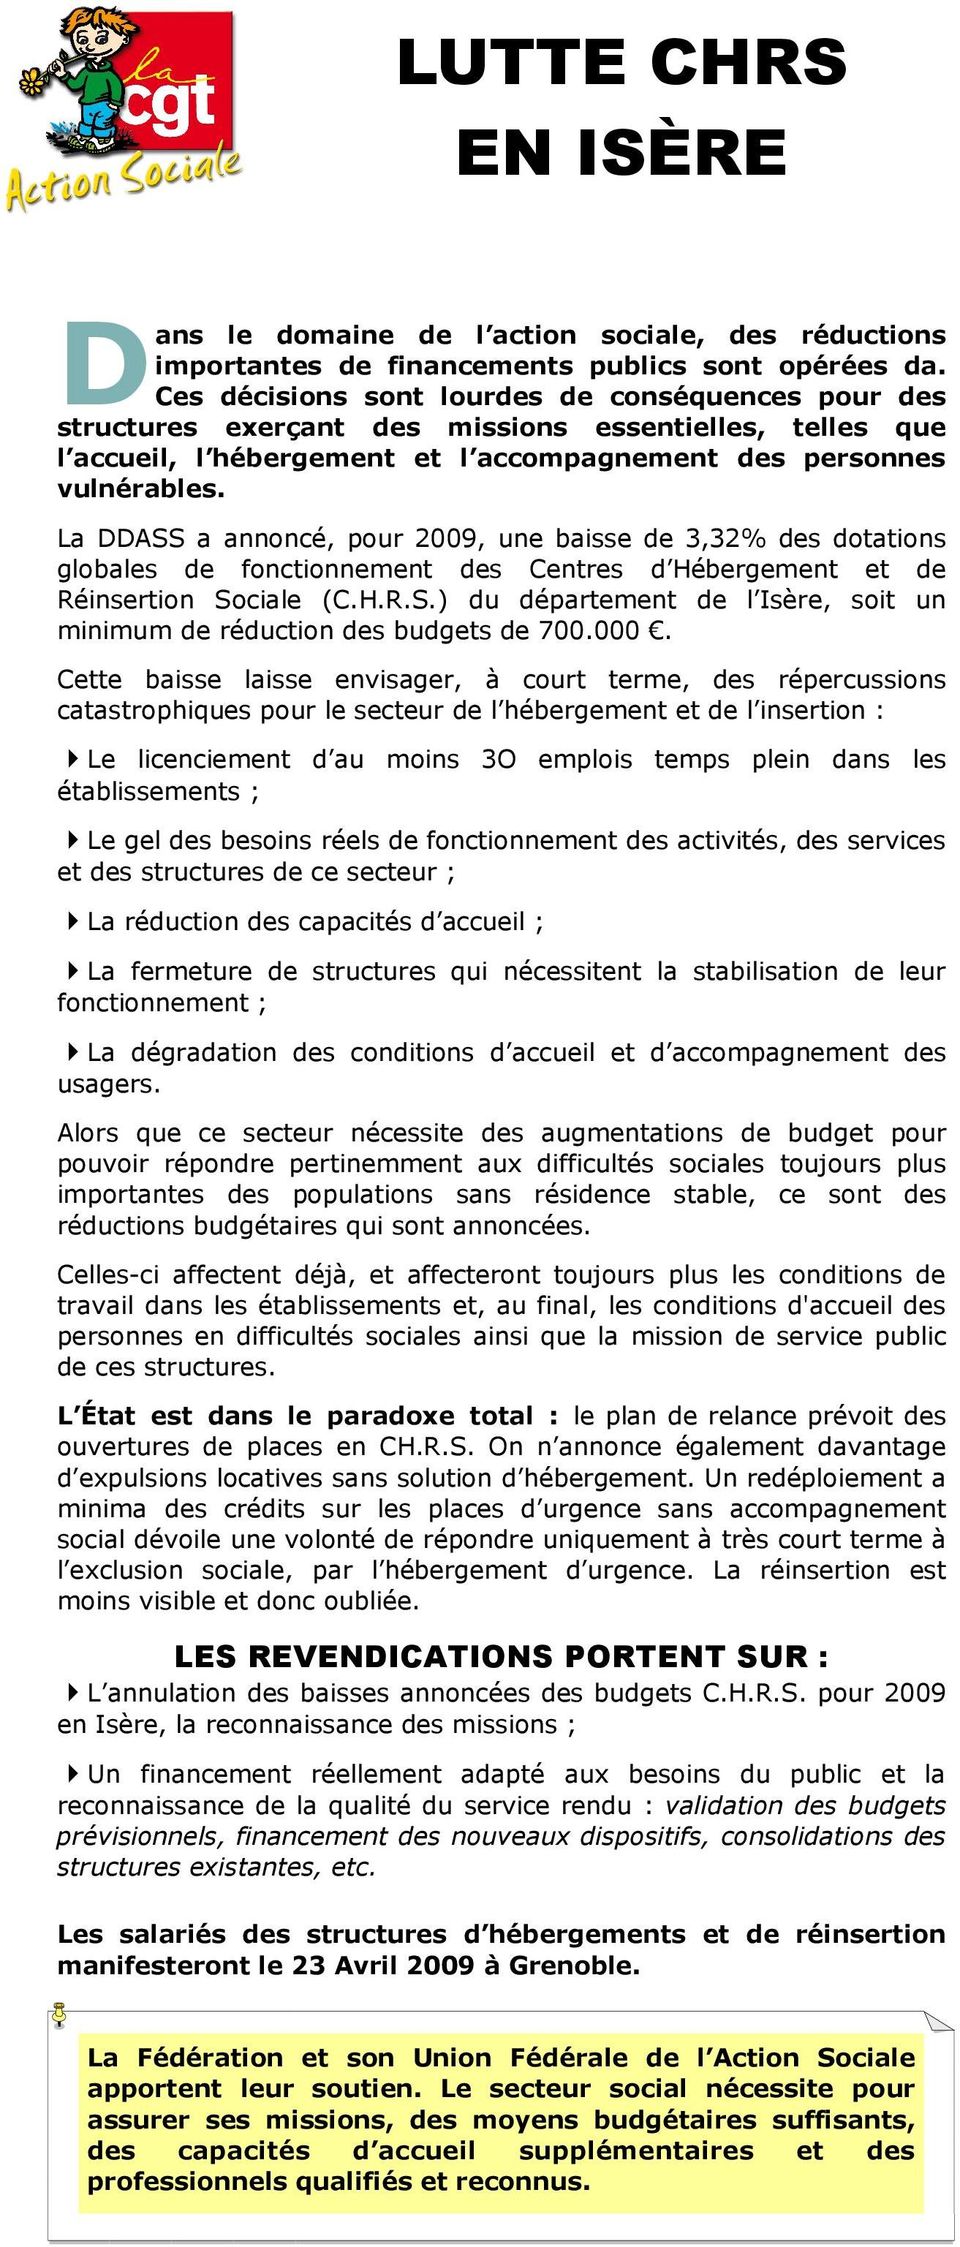 La DDASS a annoncé, pour 2009, une baisse de 3,32% des dotations globales de fonctionnement des Centres d Hébergement et de Réinsertion Sociale (C.H.R.S.) du département de l Isère, soit un minimum de réduction des budgets de 700.